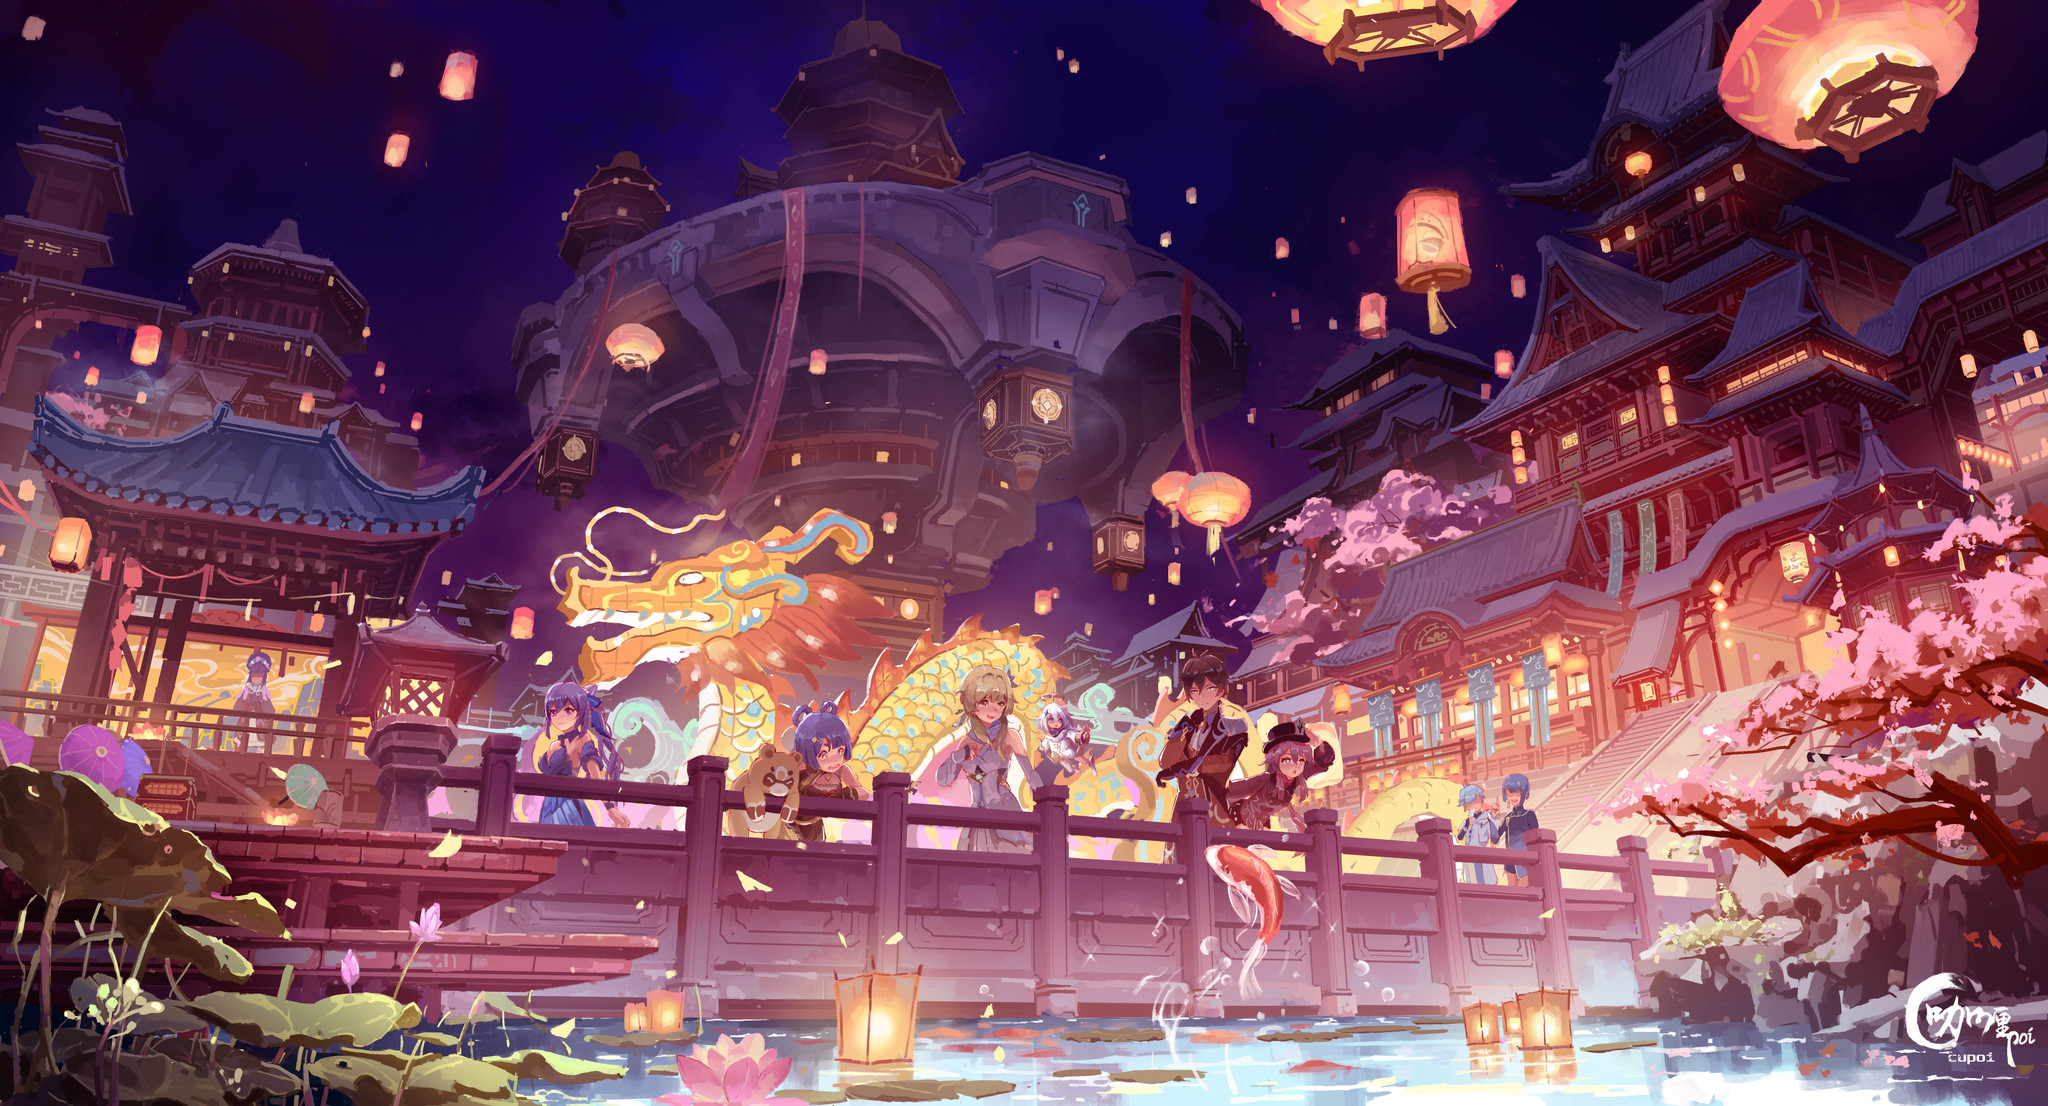 Lantern Festival - Anime art, Anime, Lumine, Xiangling, Zhongli, Hu Tao, Keqing, Guoba, Xingqiu, Chongyun, Yun Jin, Genshin impact, Lantern Festival, Paimon